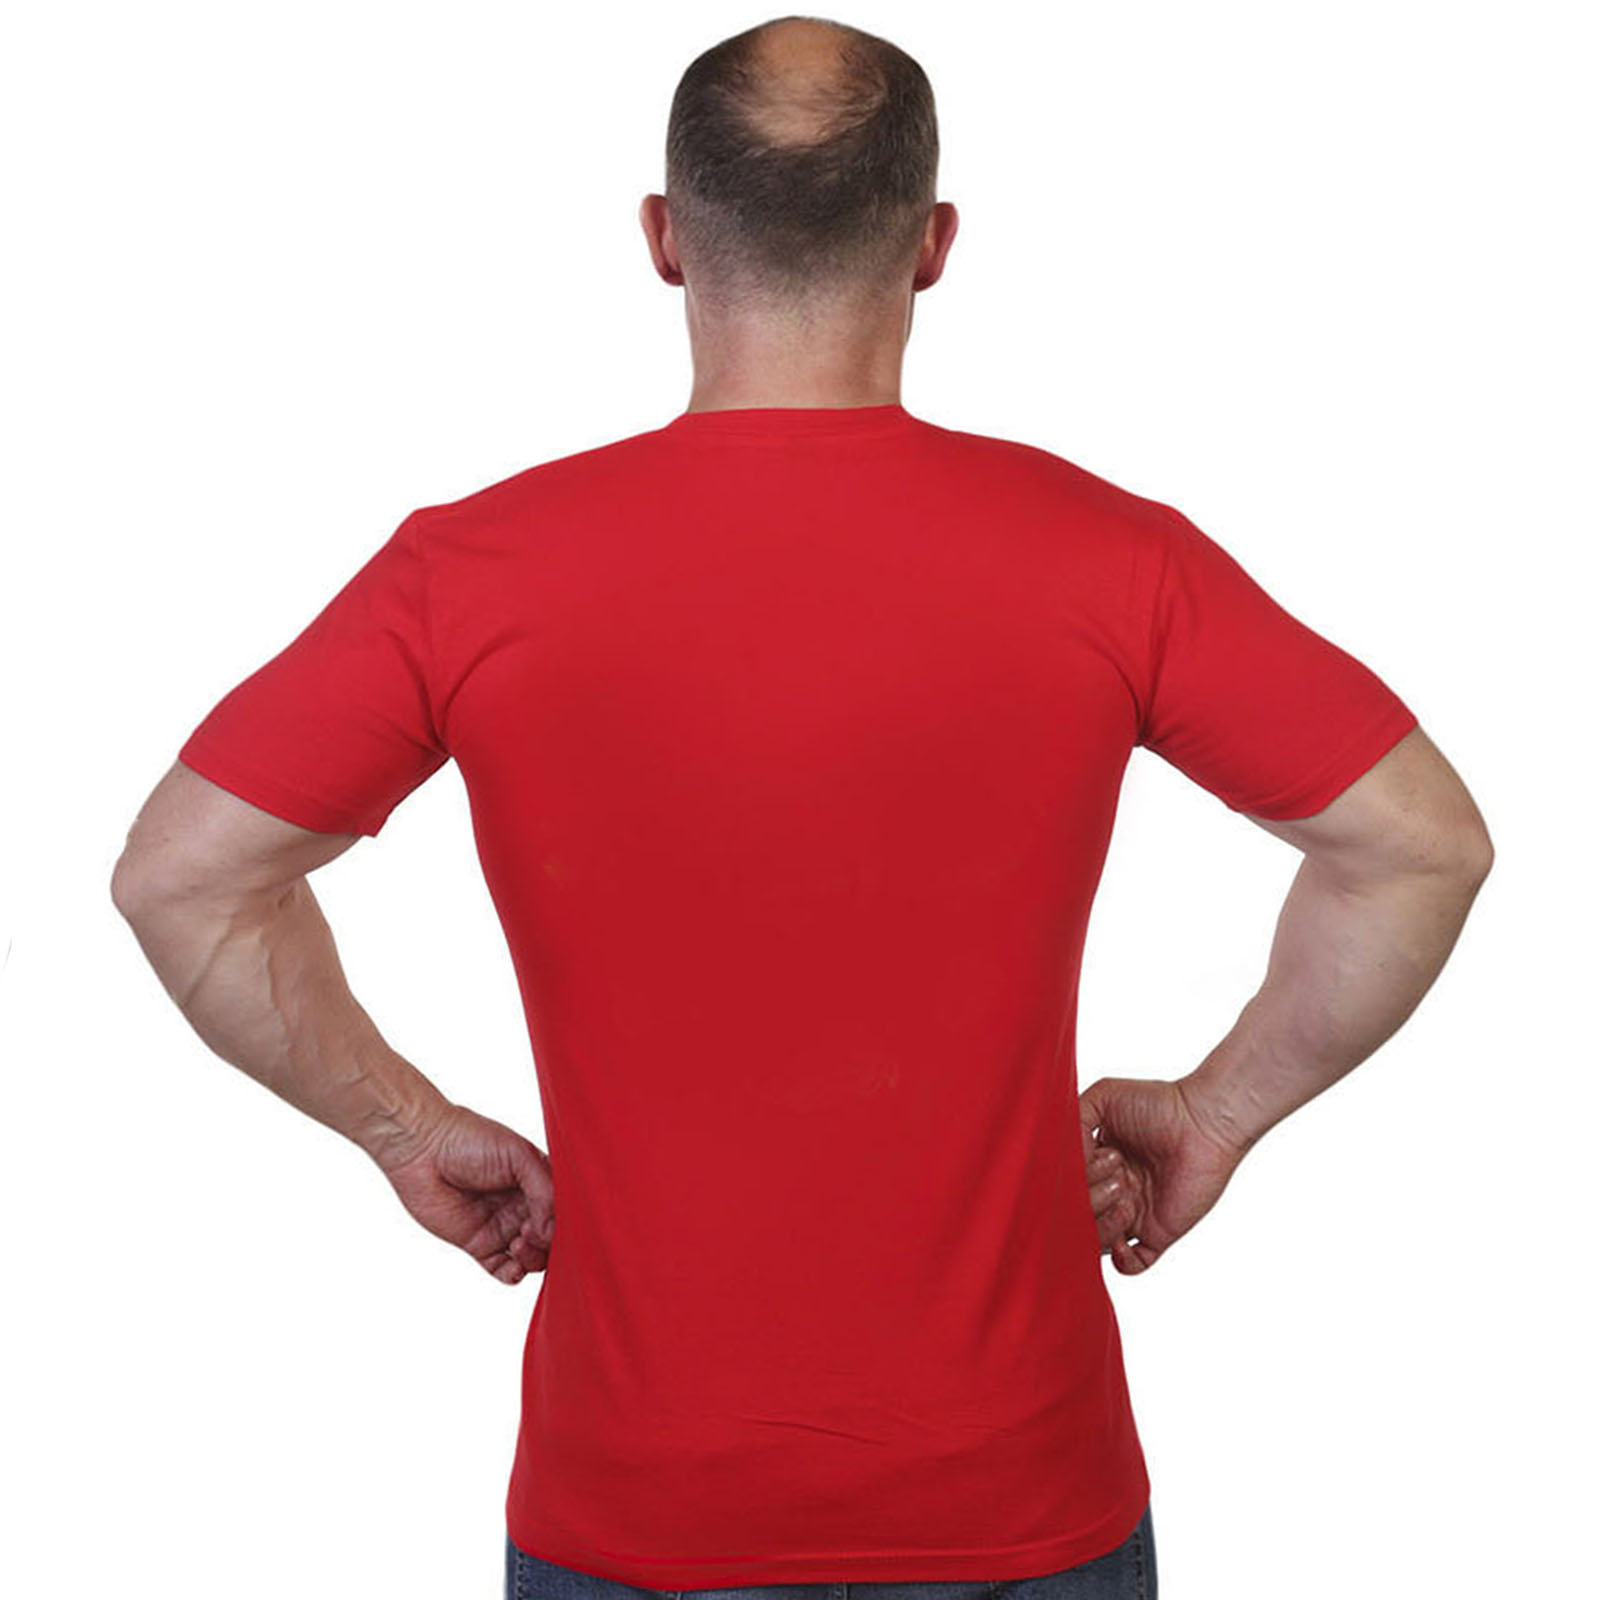 Красная футболка с термотрансфером "Ветеран боевых действий" 